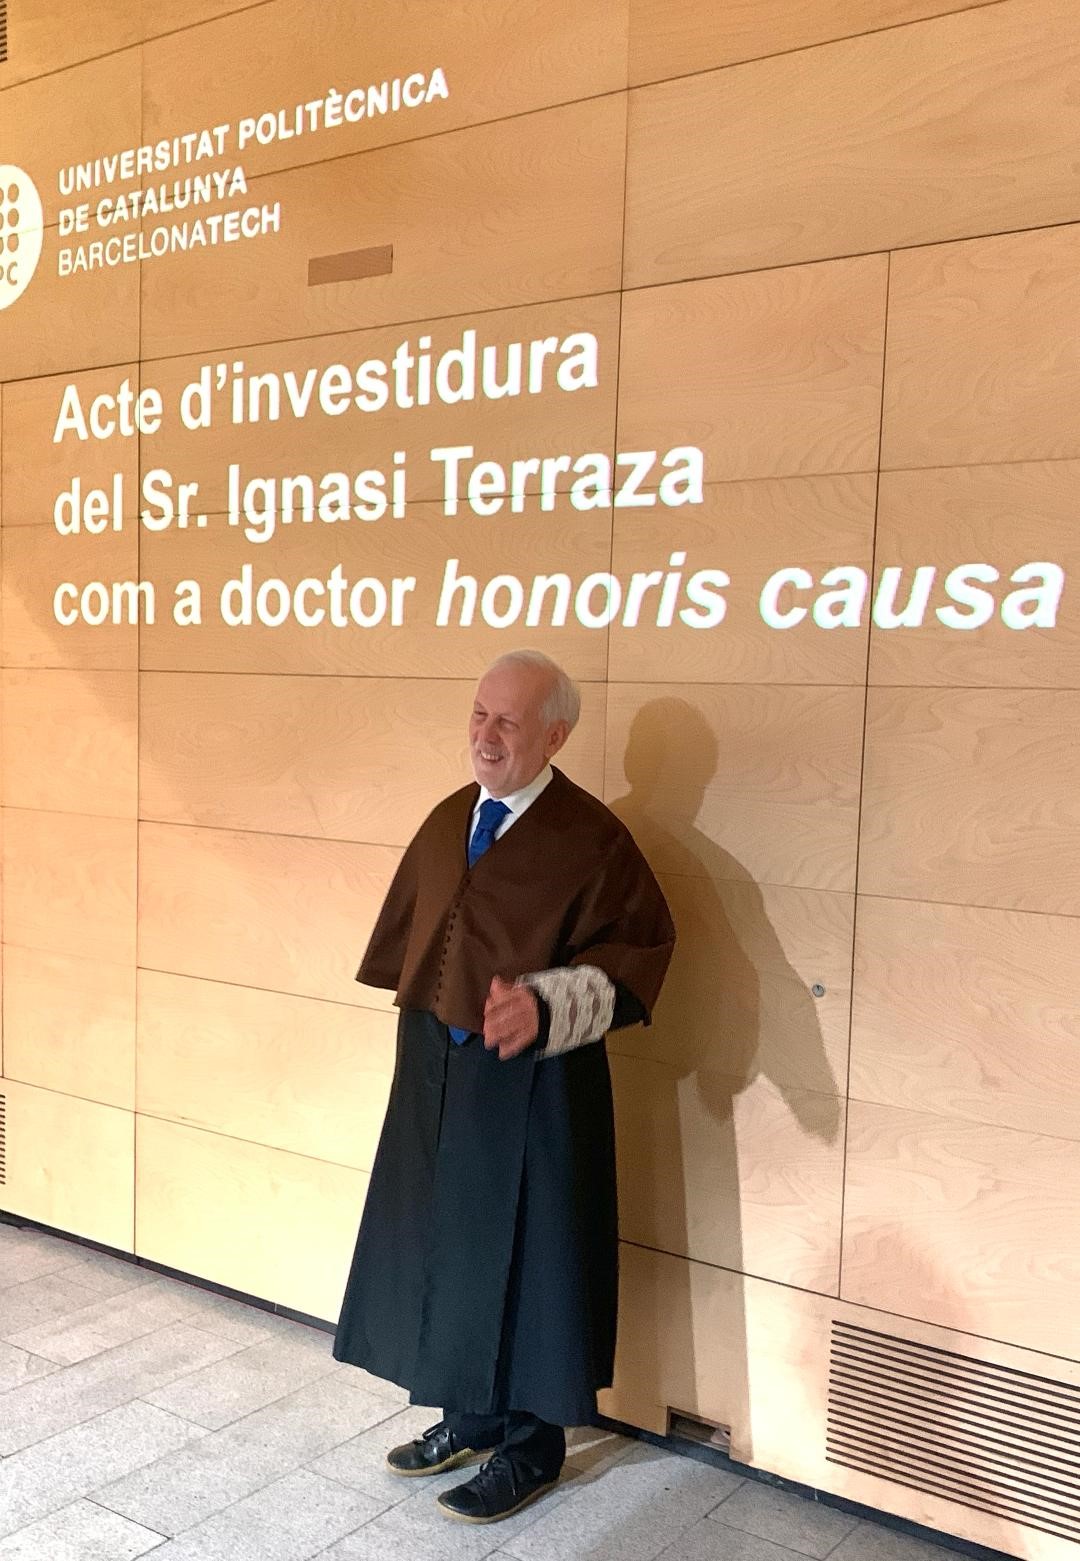 Ignasi Terraza posa moments abans  de l'acte per ser investit doctor honoris causa per la UPC.